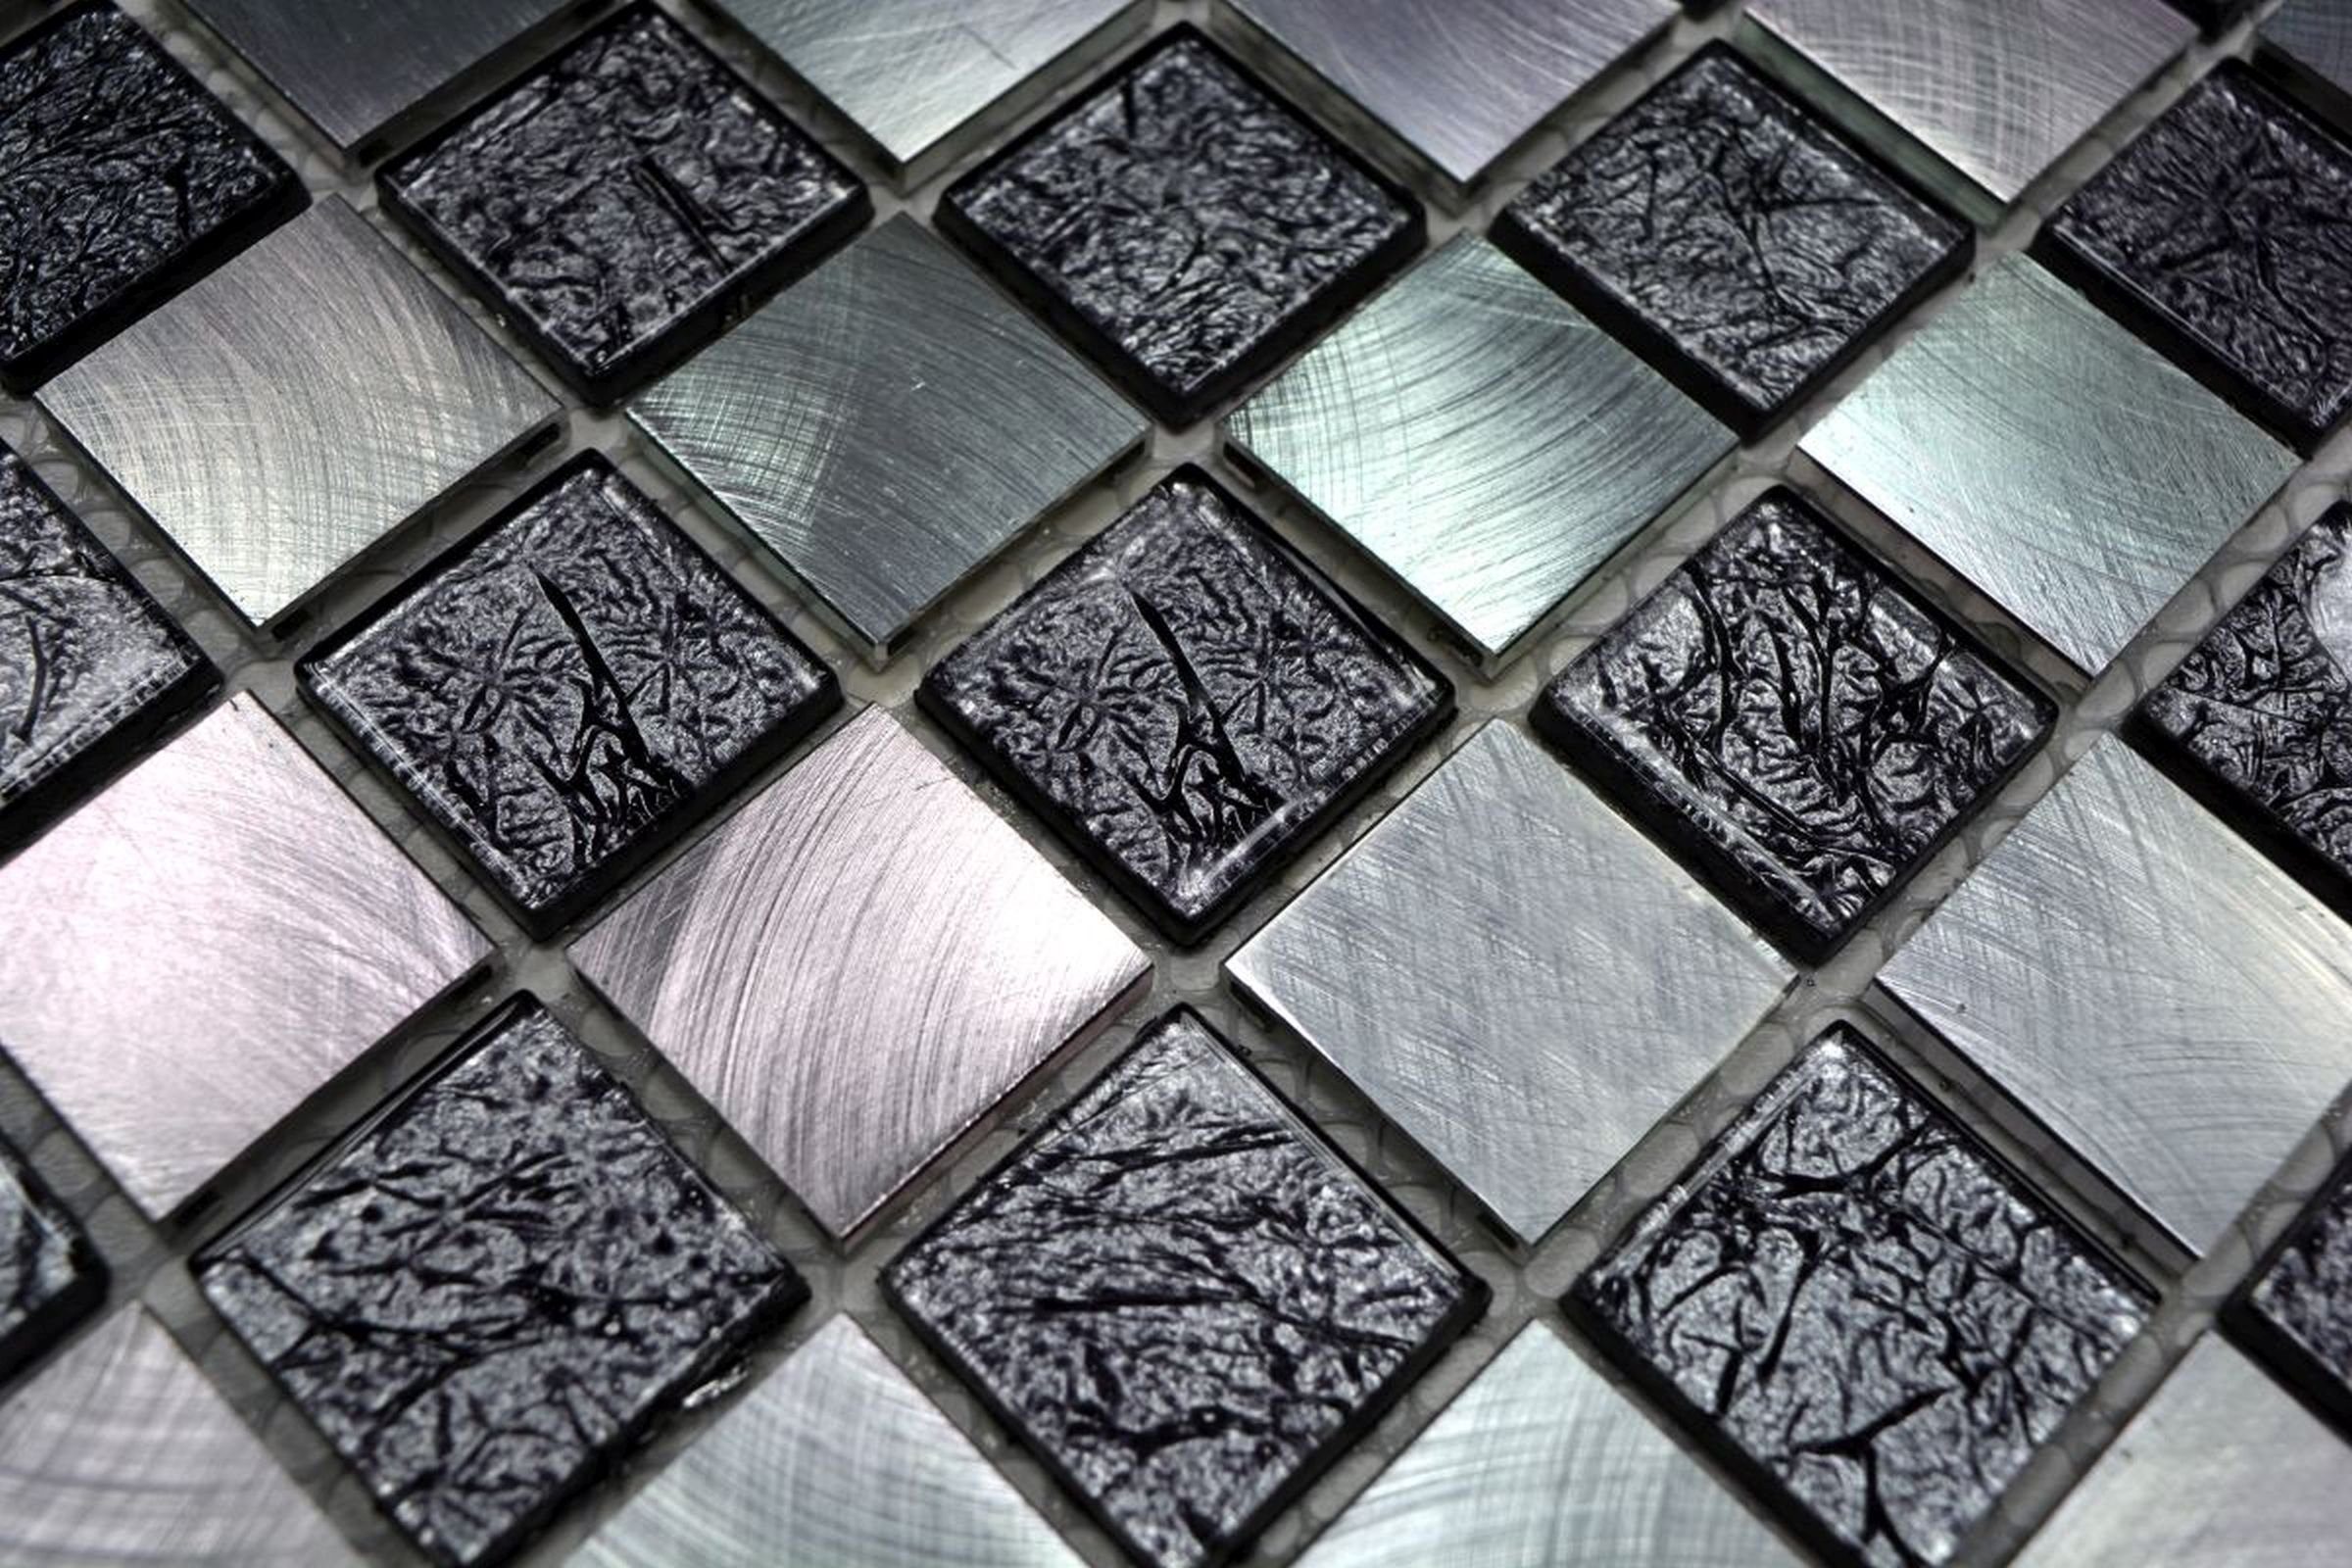 Mosani Mosaikfliesen Mosaik Fliese Alum Glasmosaik schwarz anthrazit schachbrett silber